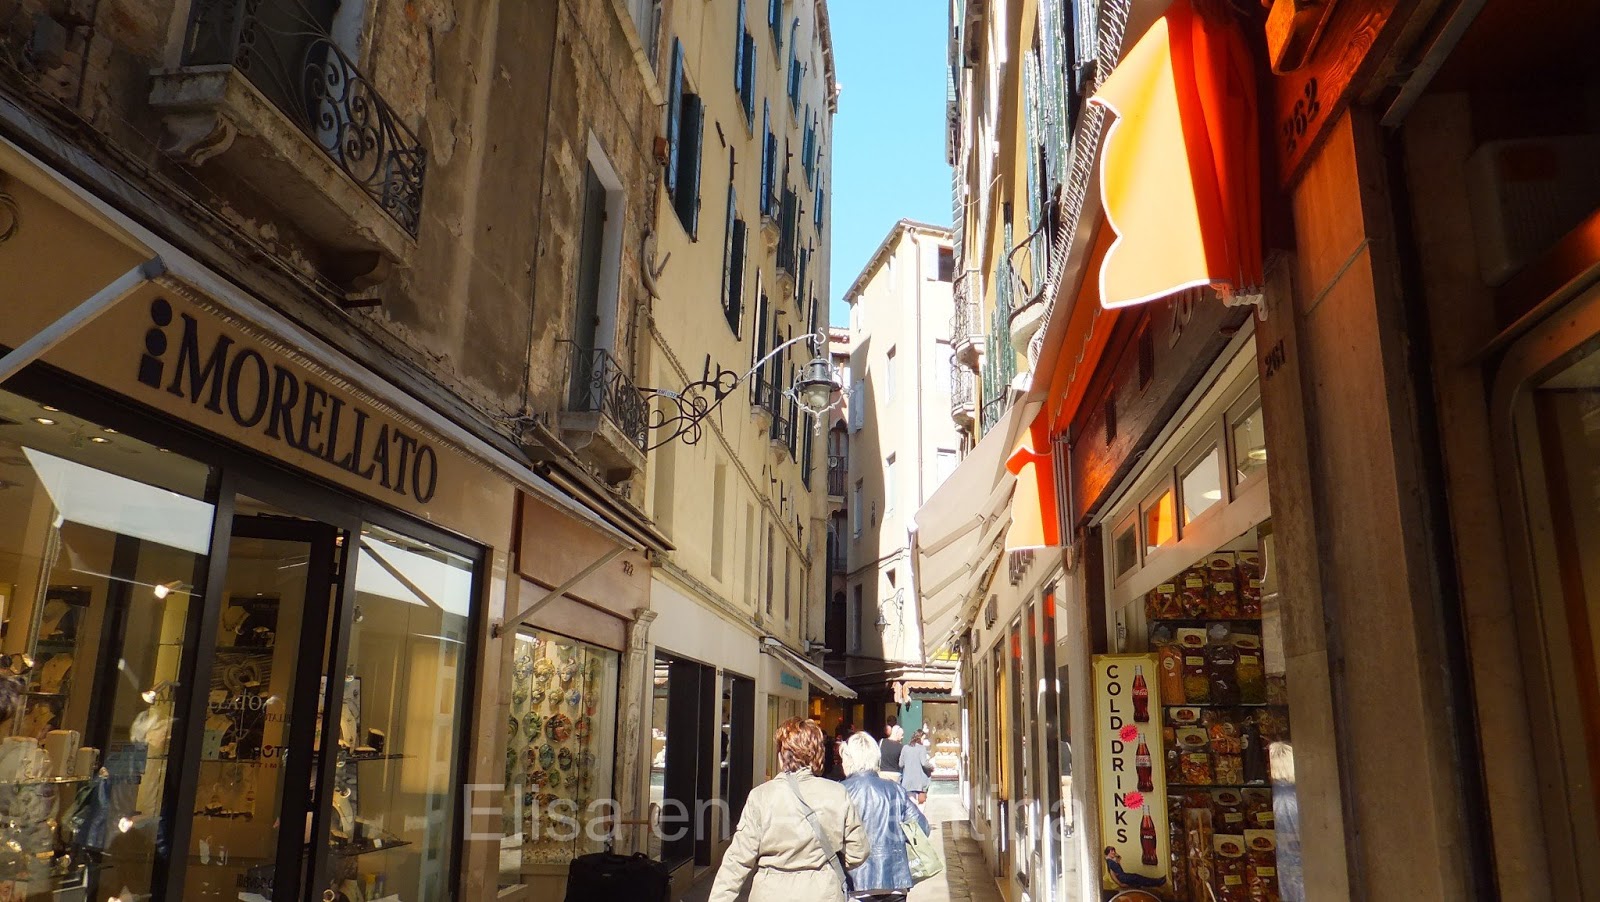 Torre dell´Orologio, Piazza San Marco, Venecia, Italia, Elisa N, Blog de Viajes, Lifestyle, Travel